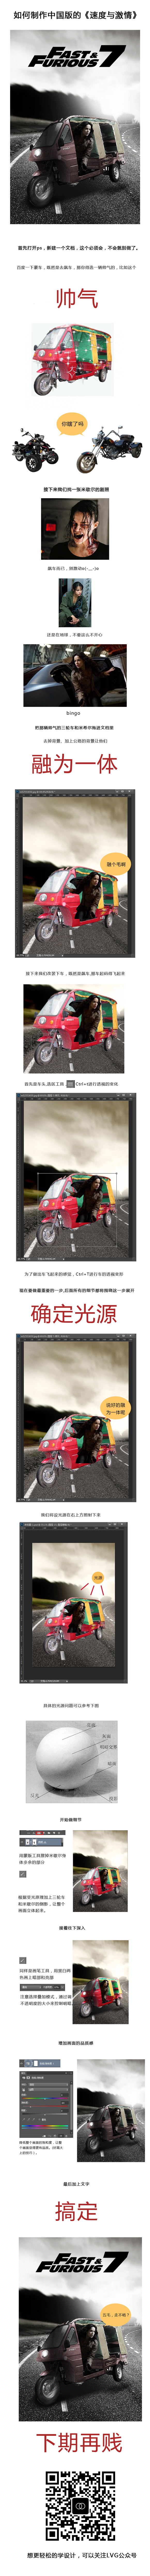 如何制作一张中国版《速度与激情7》的海报2